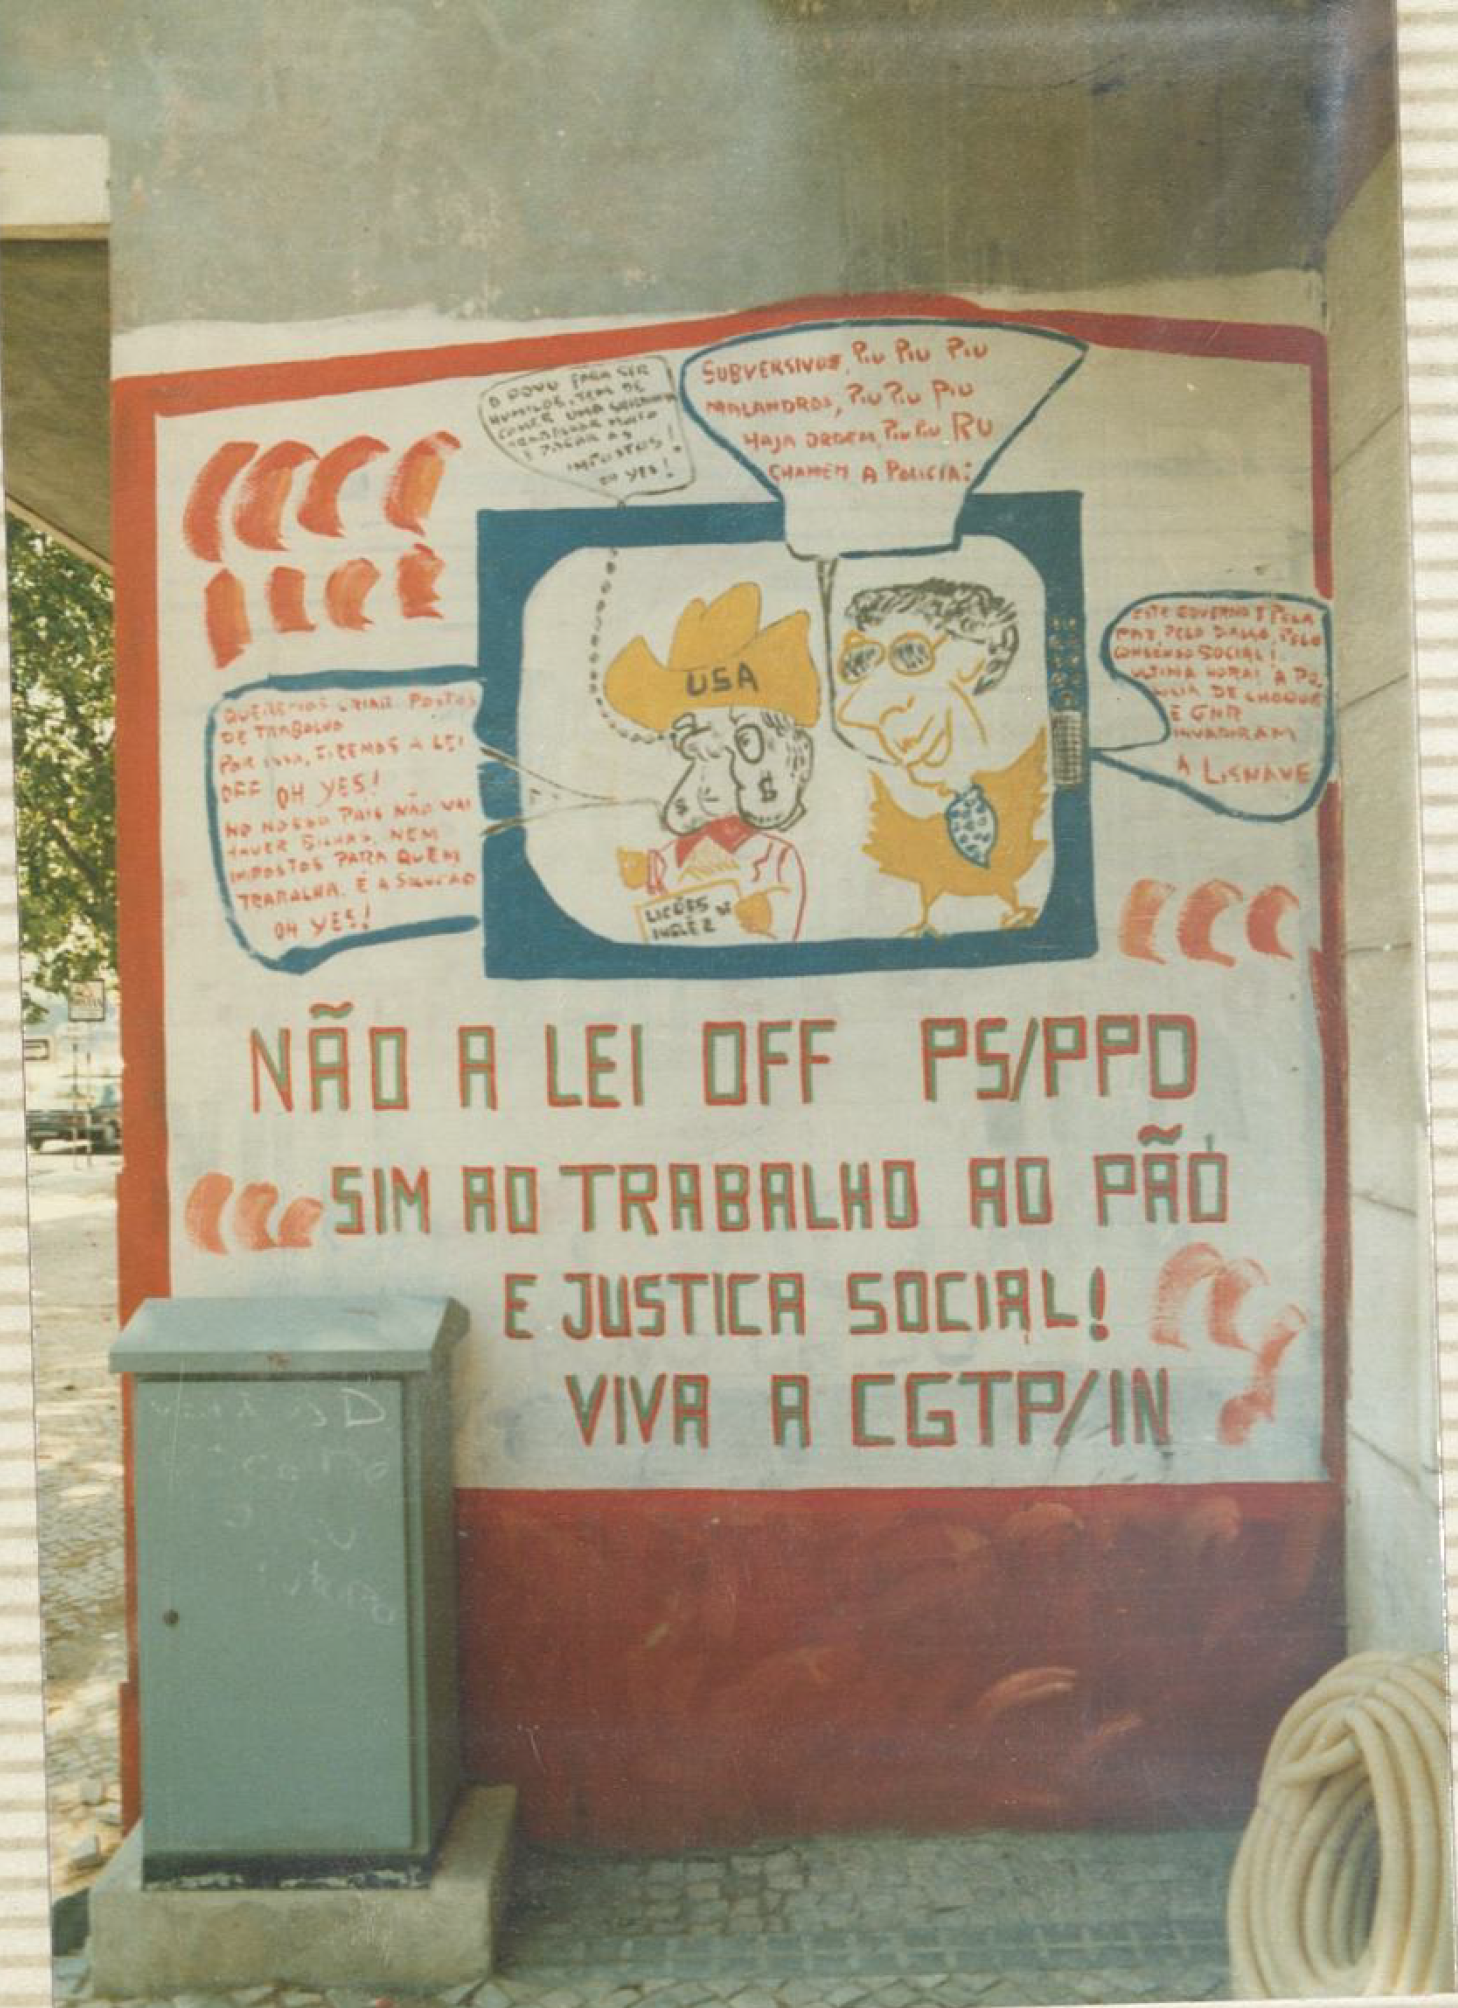 Mural Não à lei OFF PS/PDD